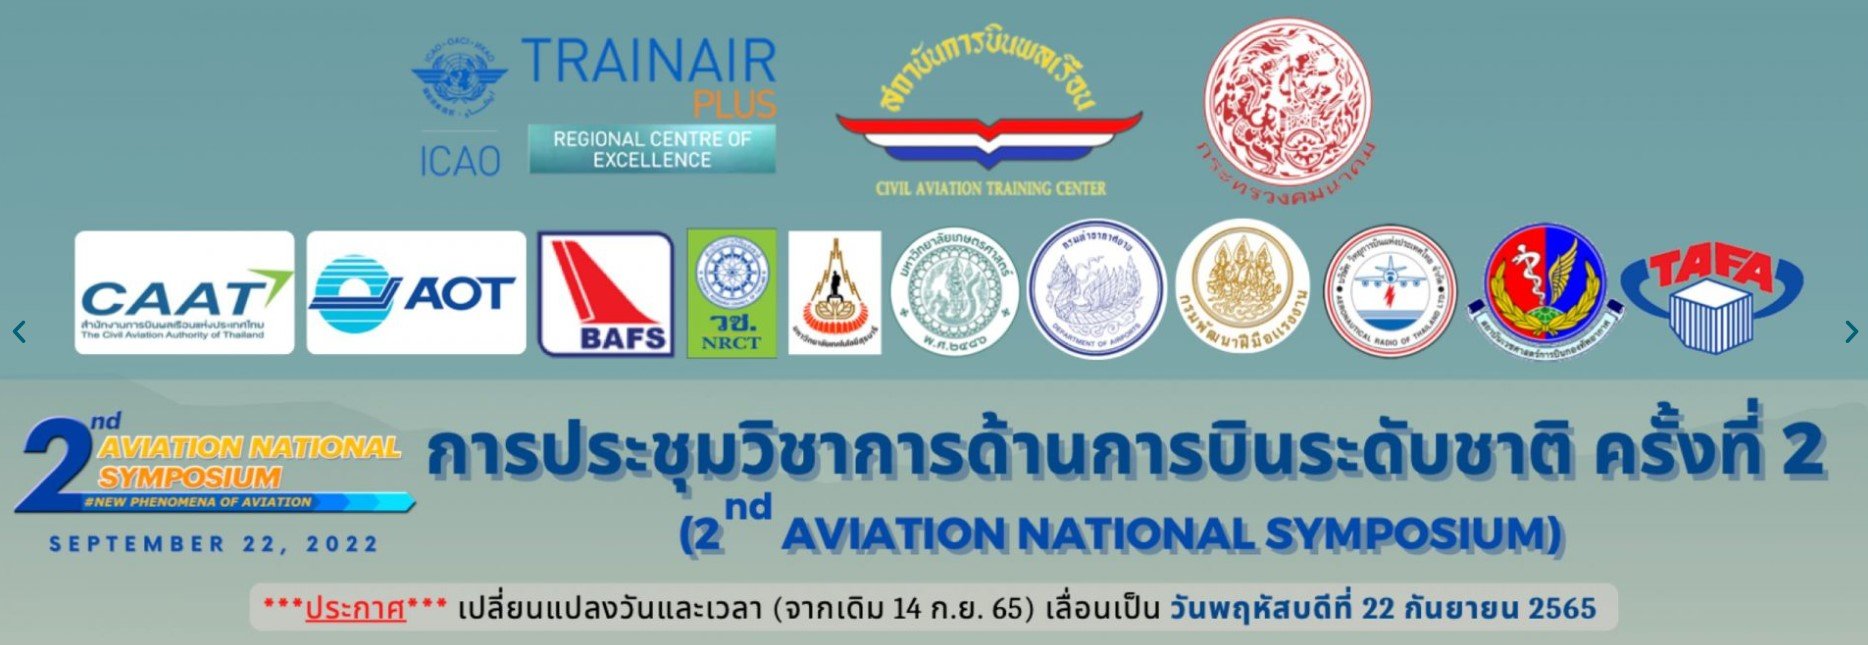 การประชุมวิชาการด้านการบินระดับชาติ ครั้งที่ 2